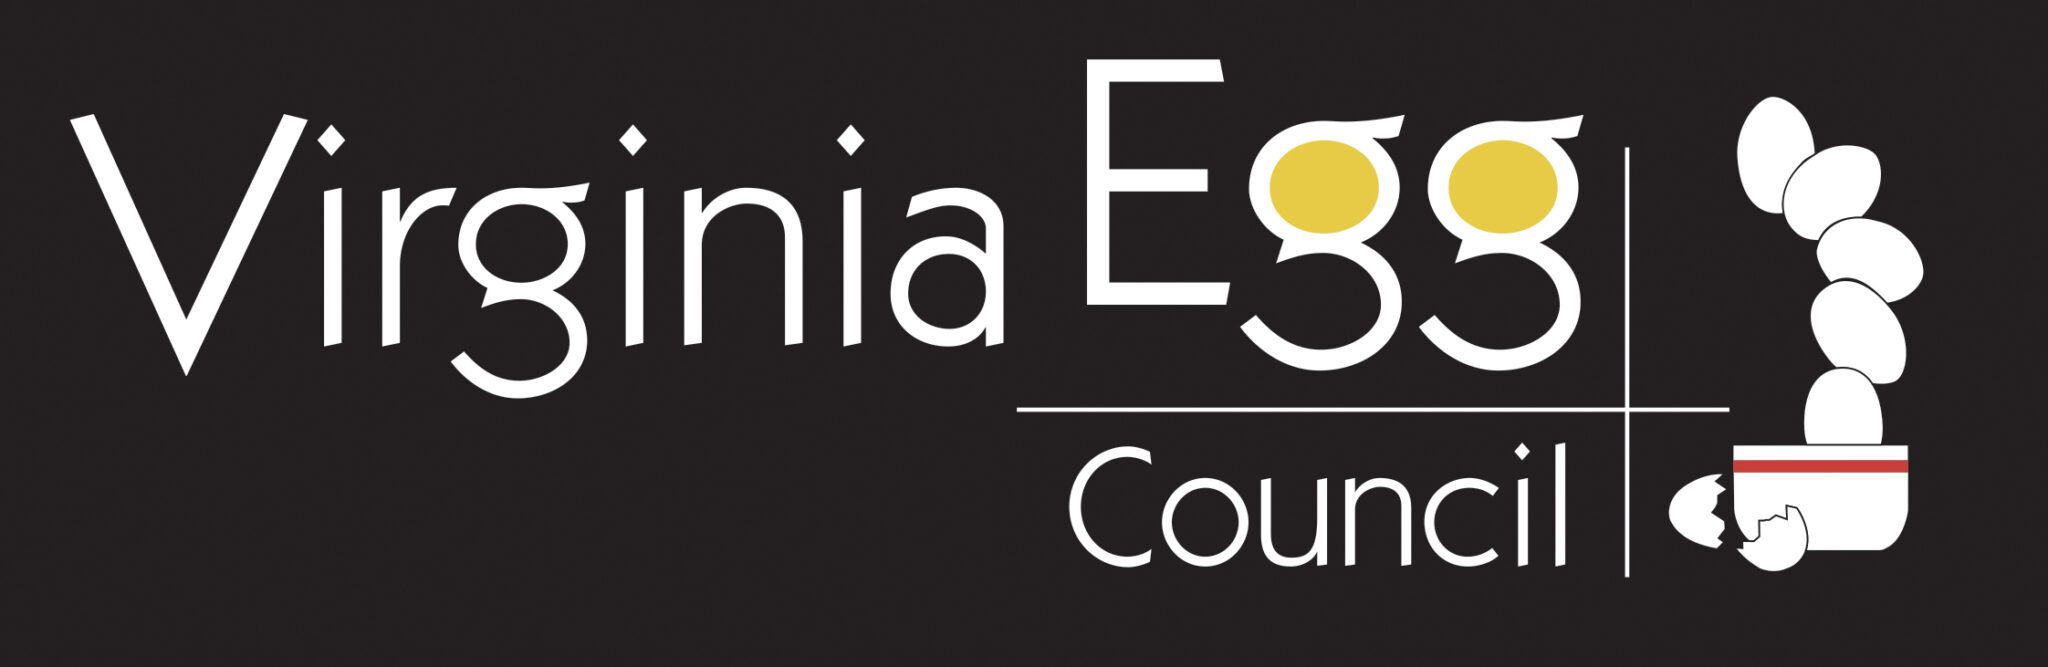 Virginia Egg Council